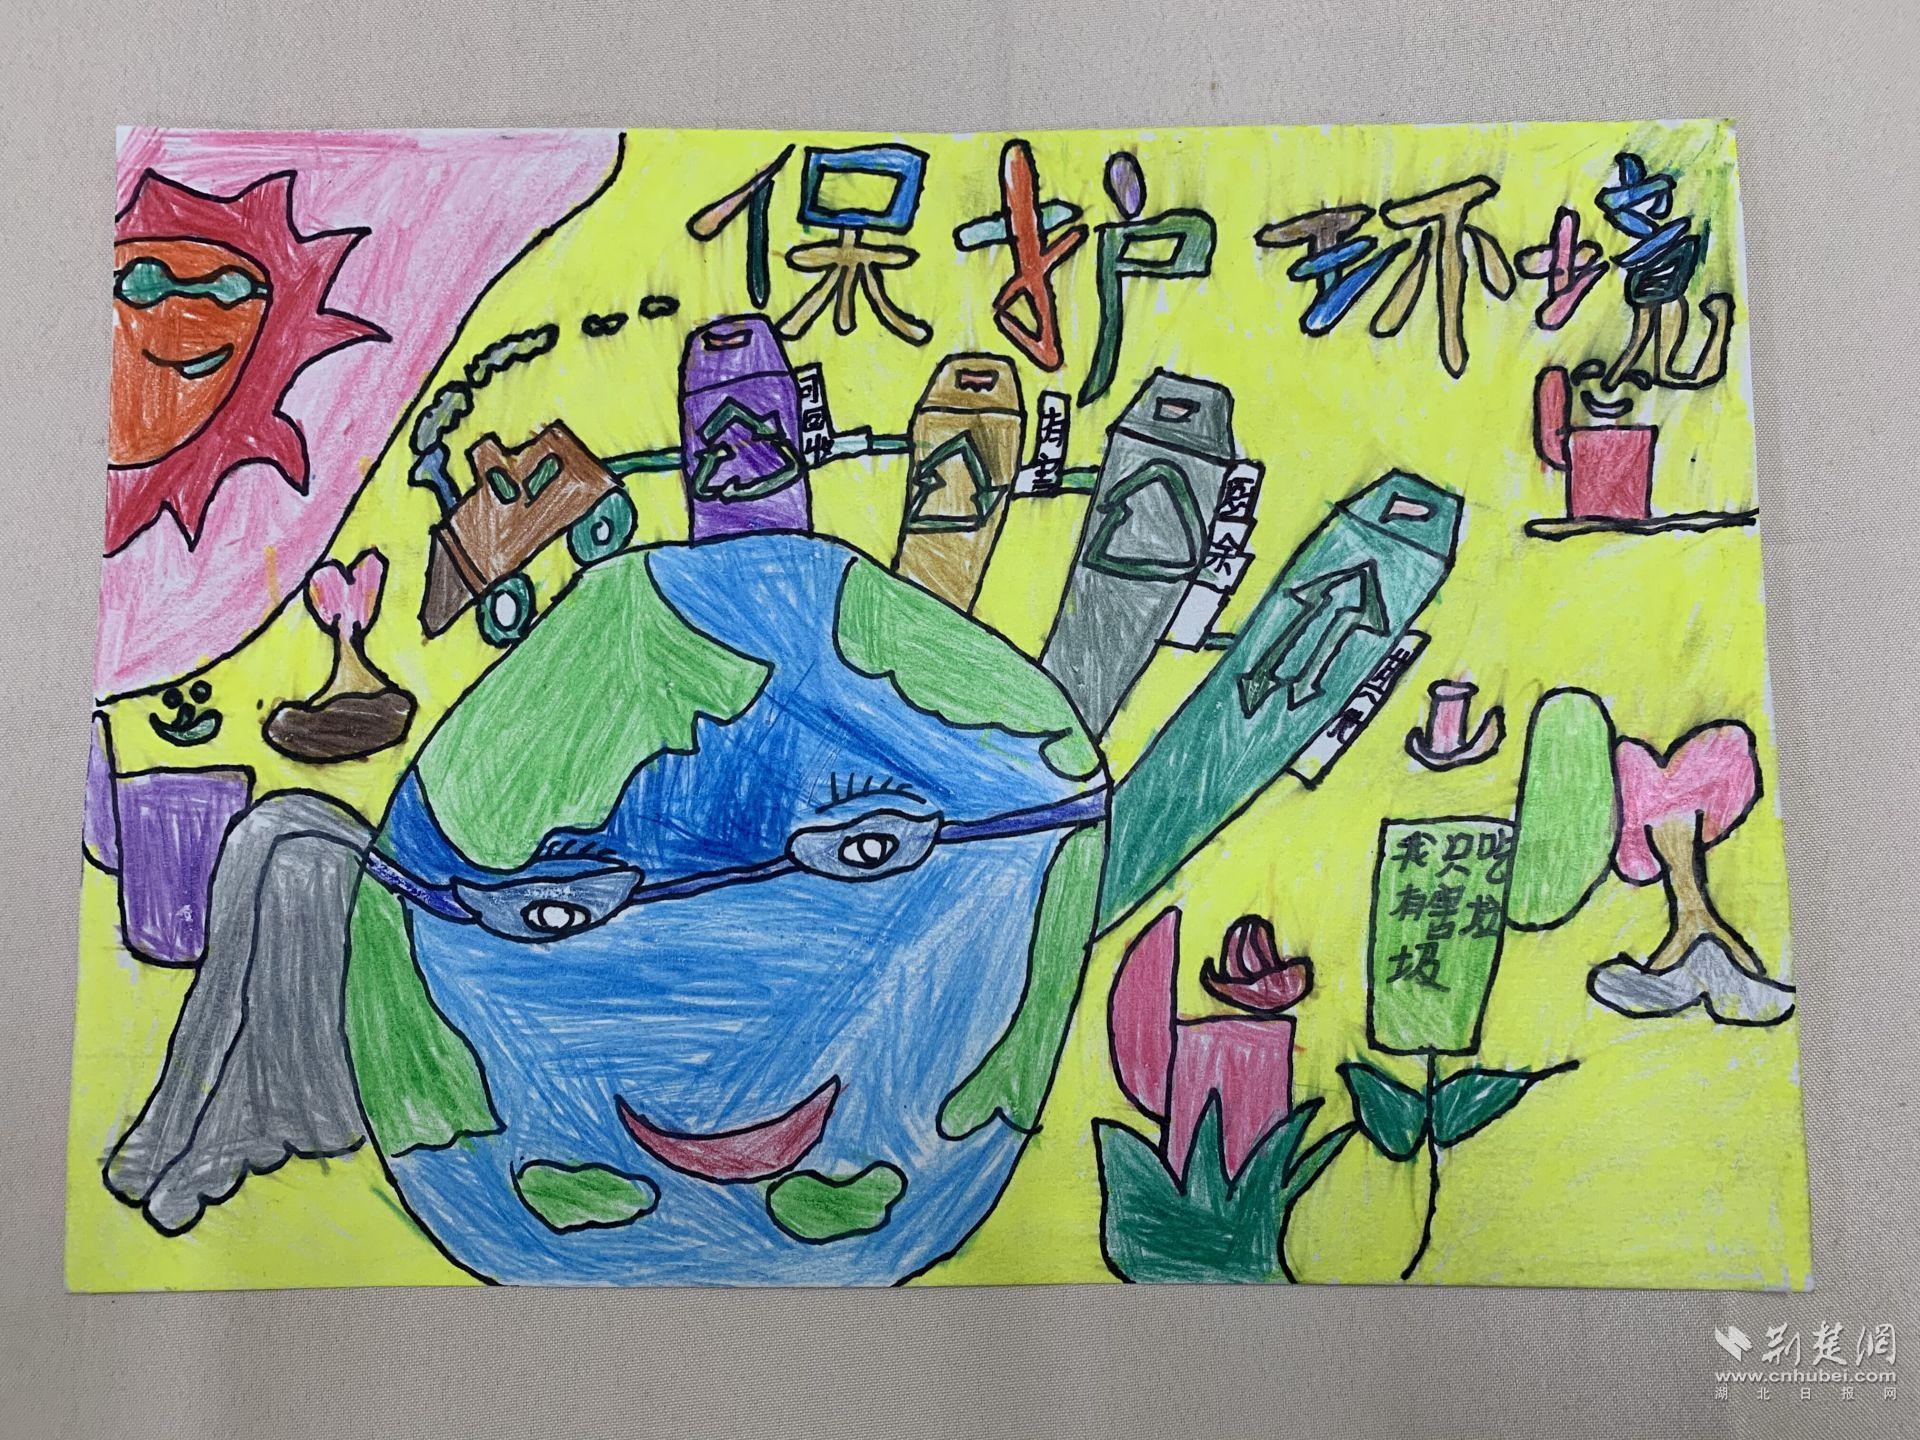 兴山儿童创作绘画宣传环保:美丽中国共同守护